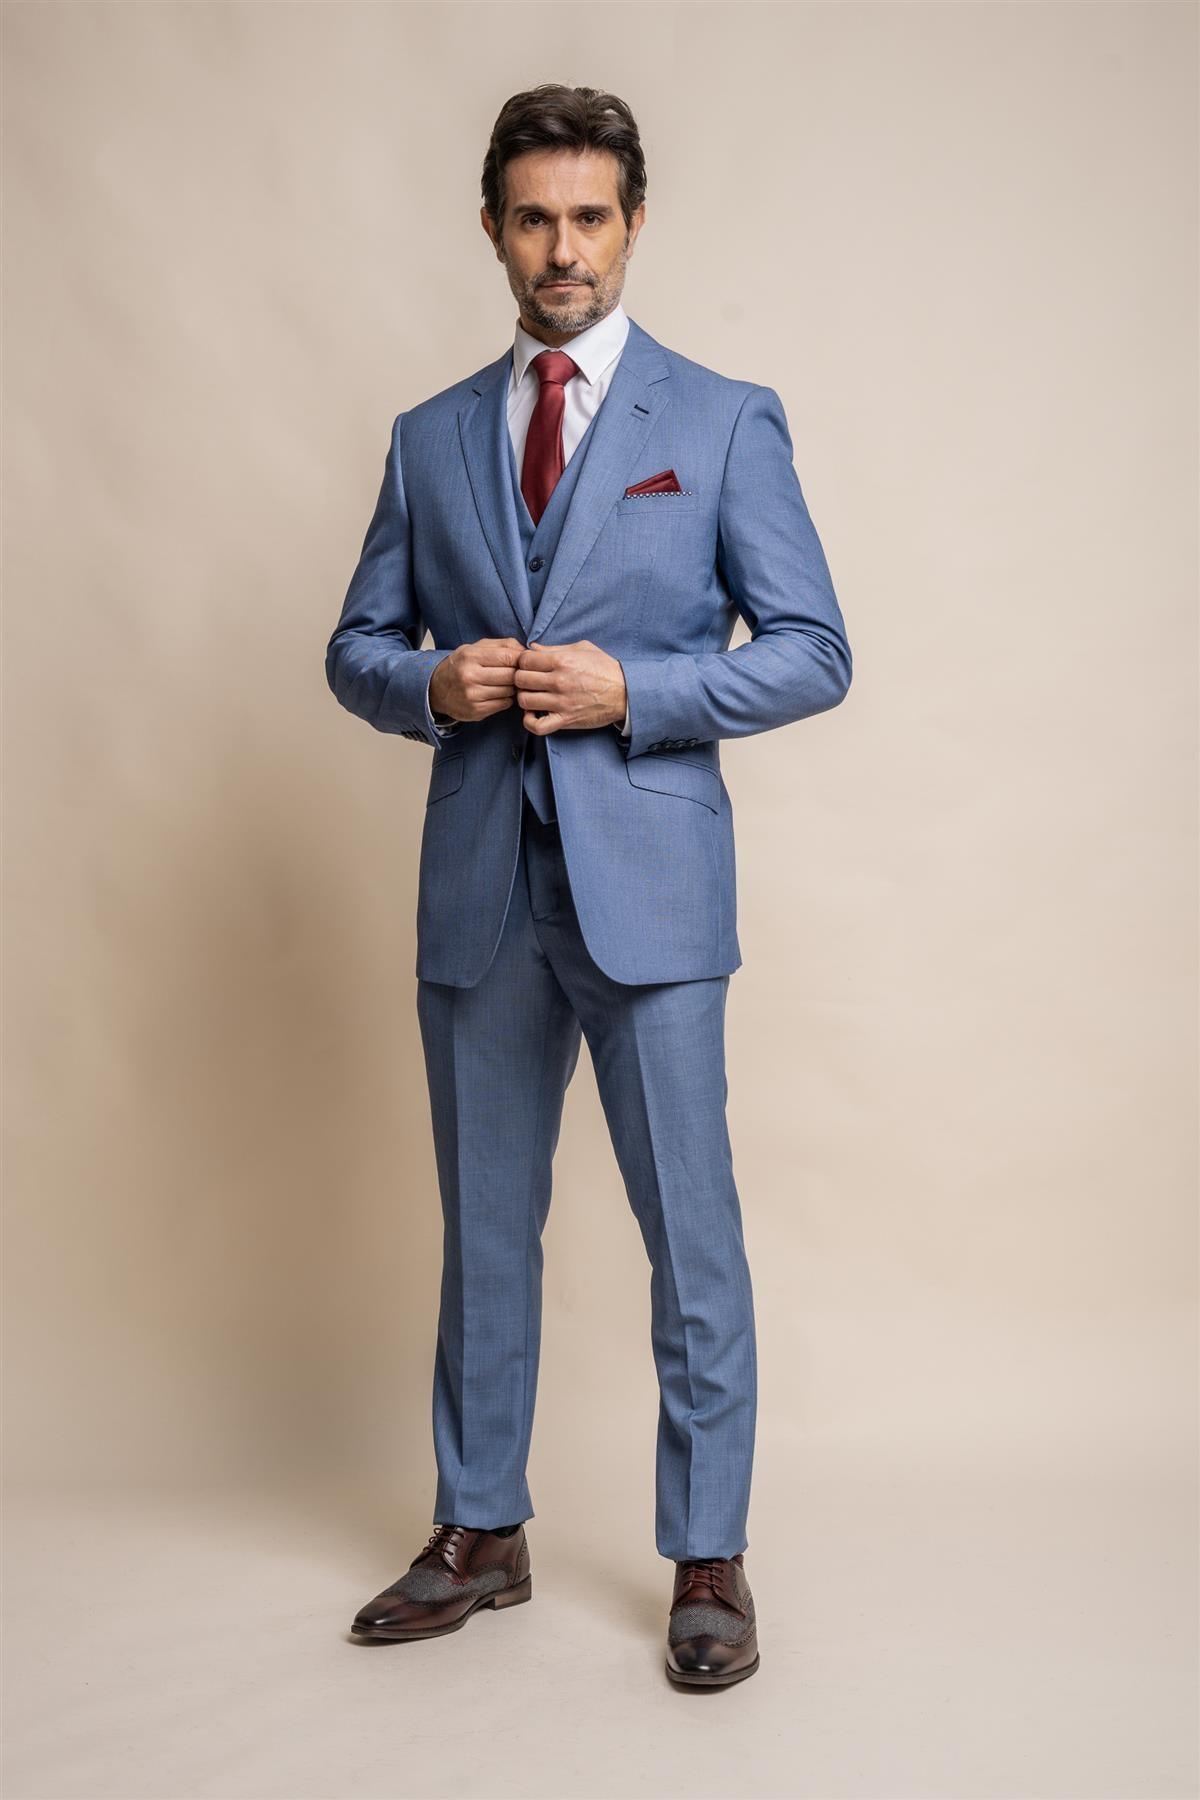 House of Cavani Orson Blue Tweed Slim Fit Suit - Clothing from House Of  Cavani UK